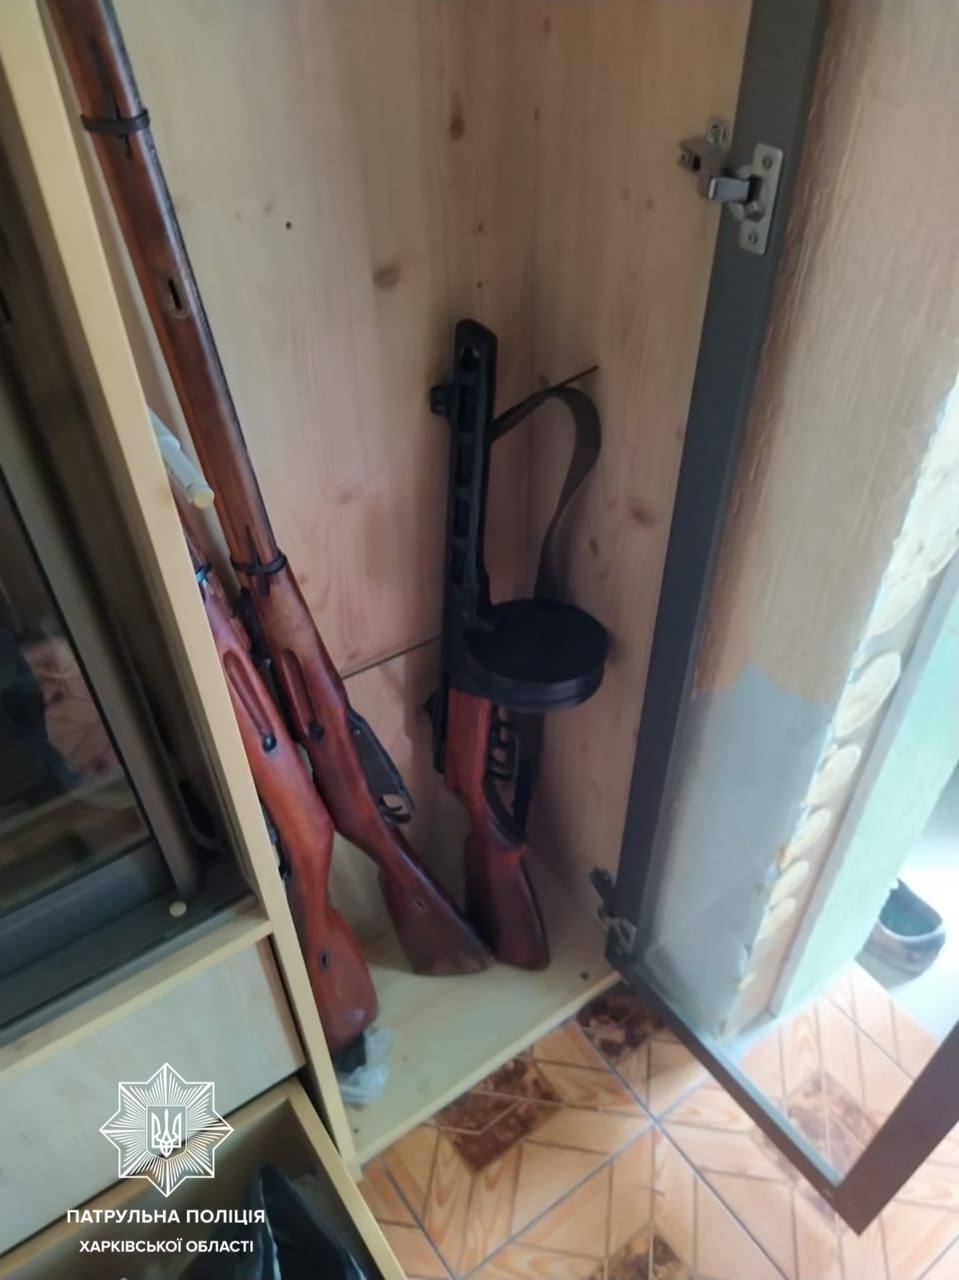 Харьковские патрульные нашли в жилом доме огнестрельное оружие и коноплю, задержаны три человека